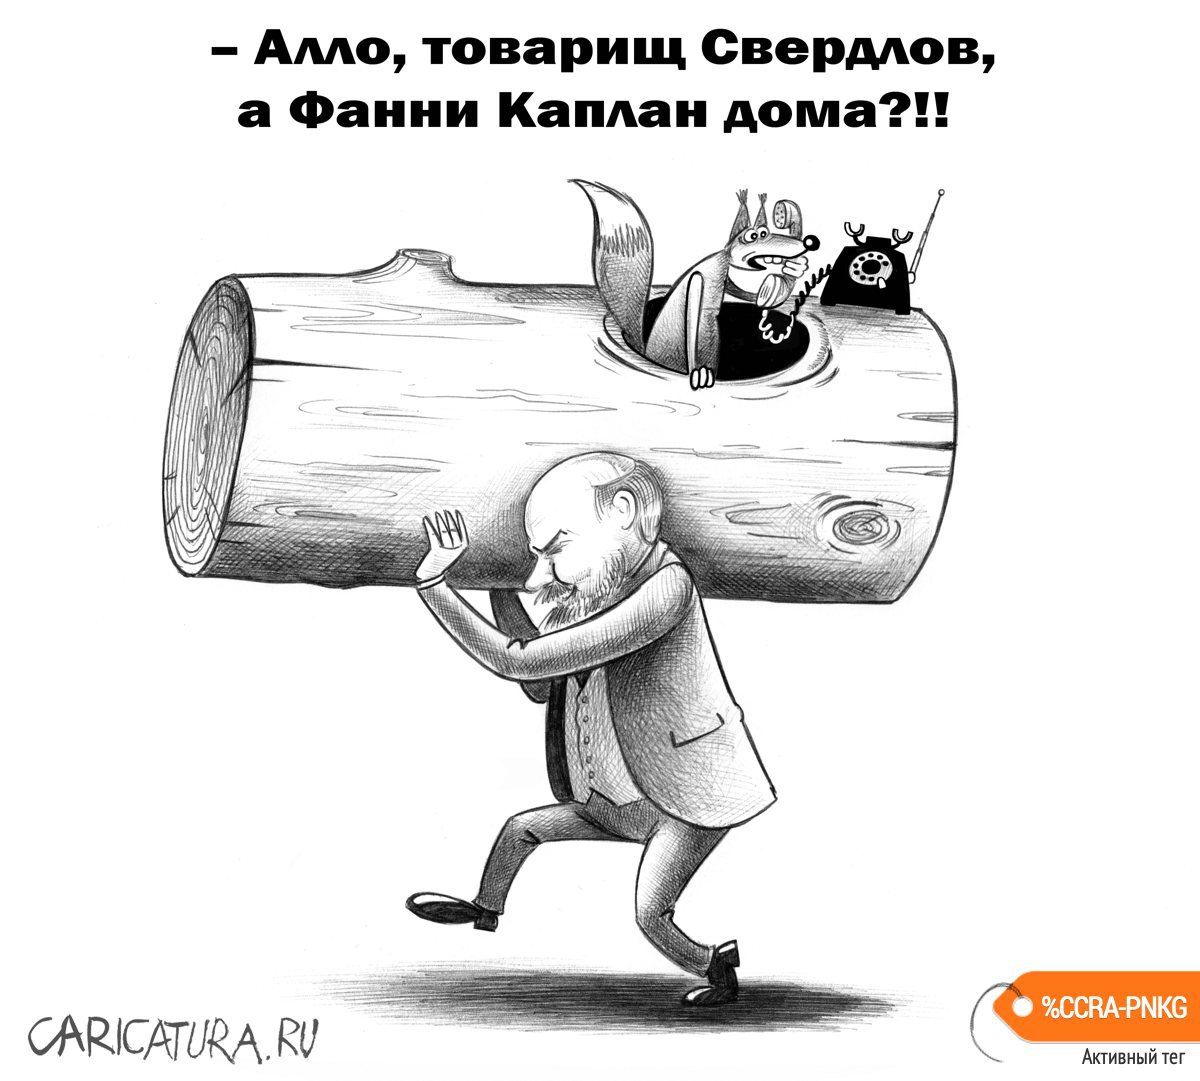 Карикатура "Субботник", Сергей Корсун